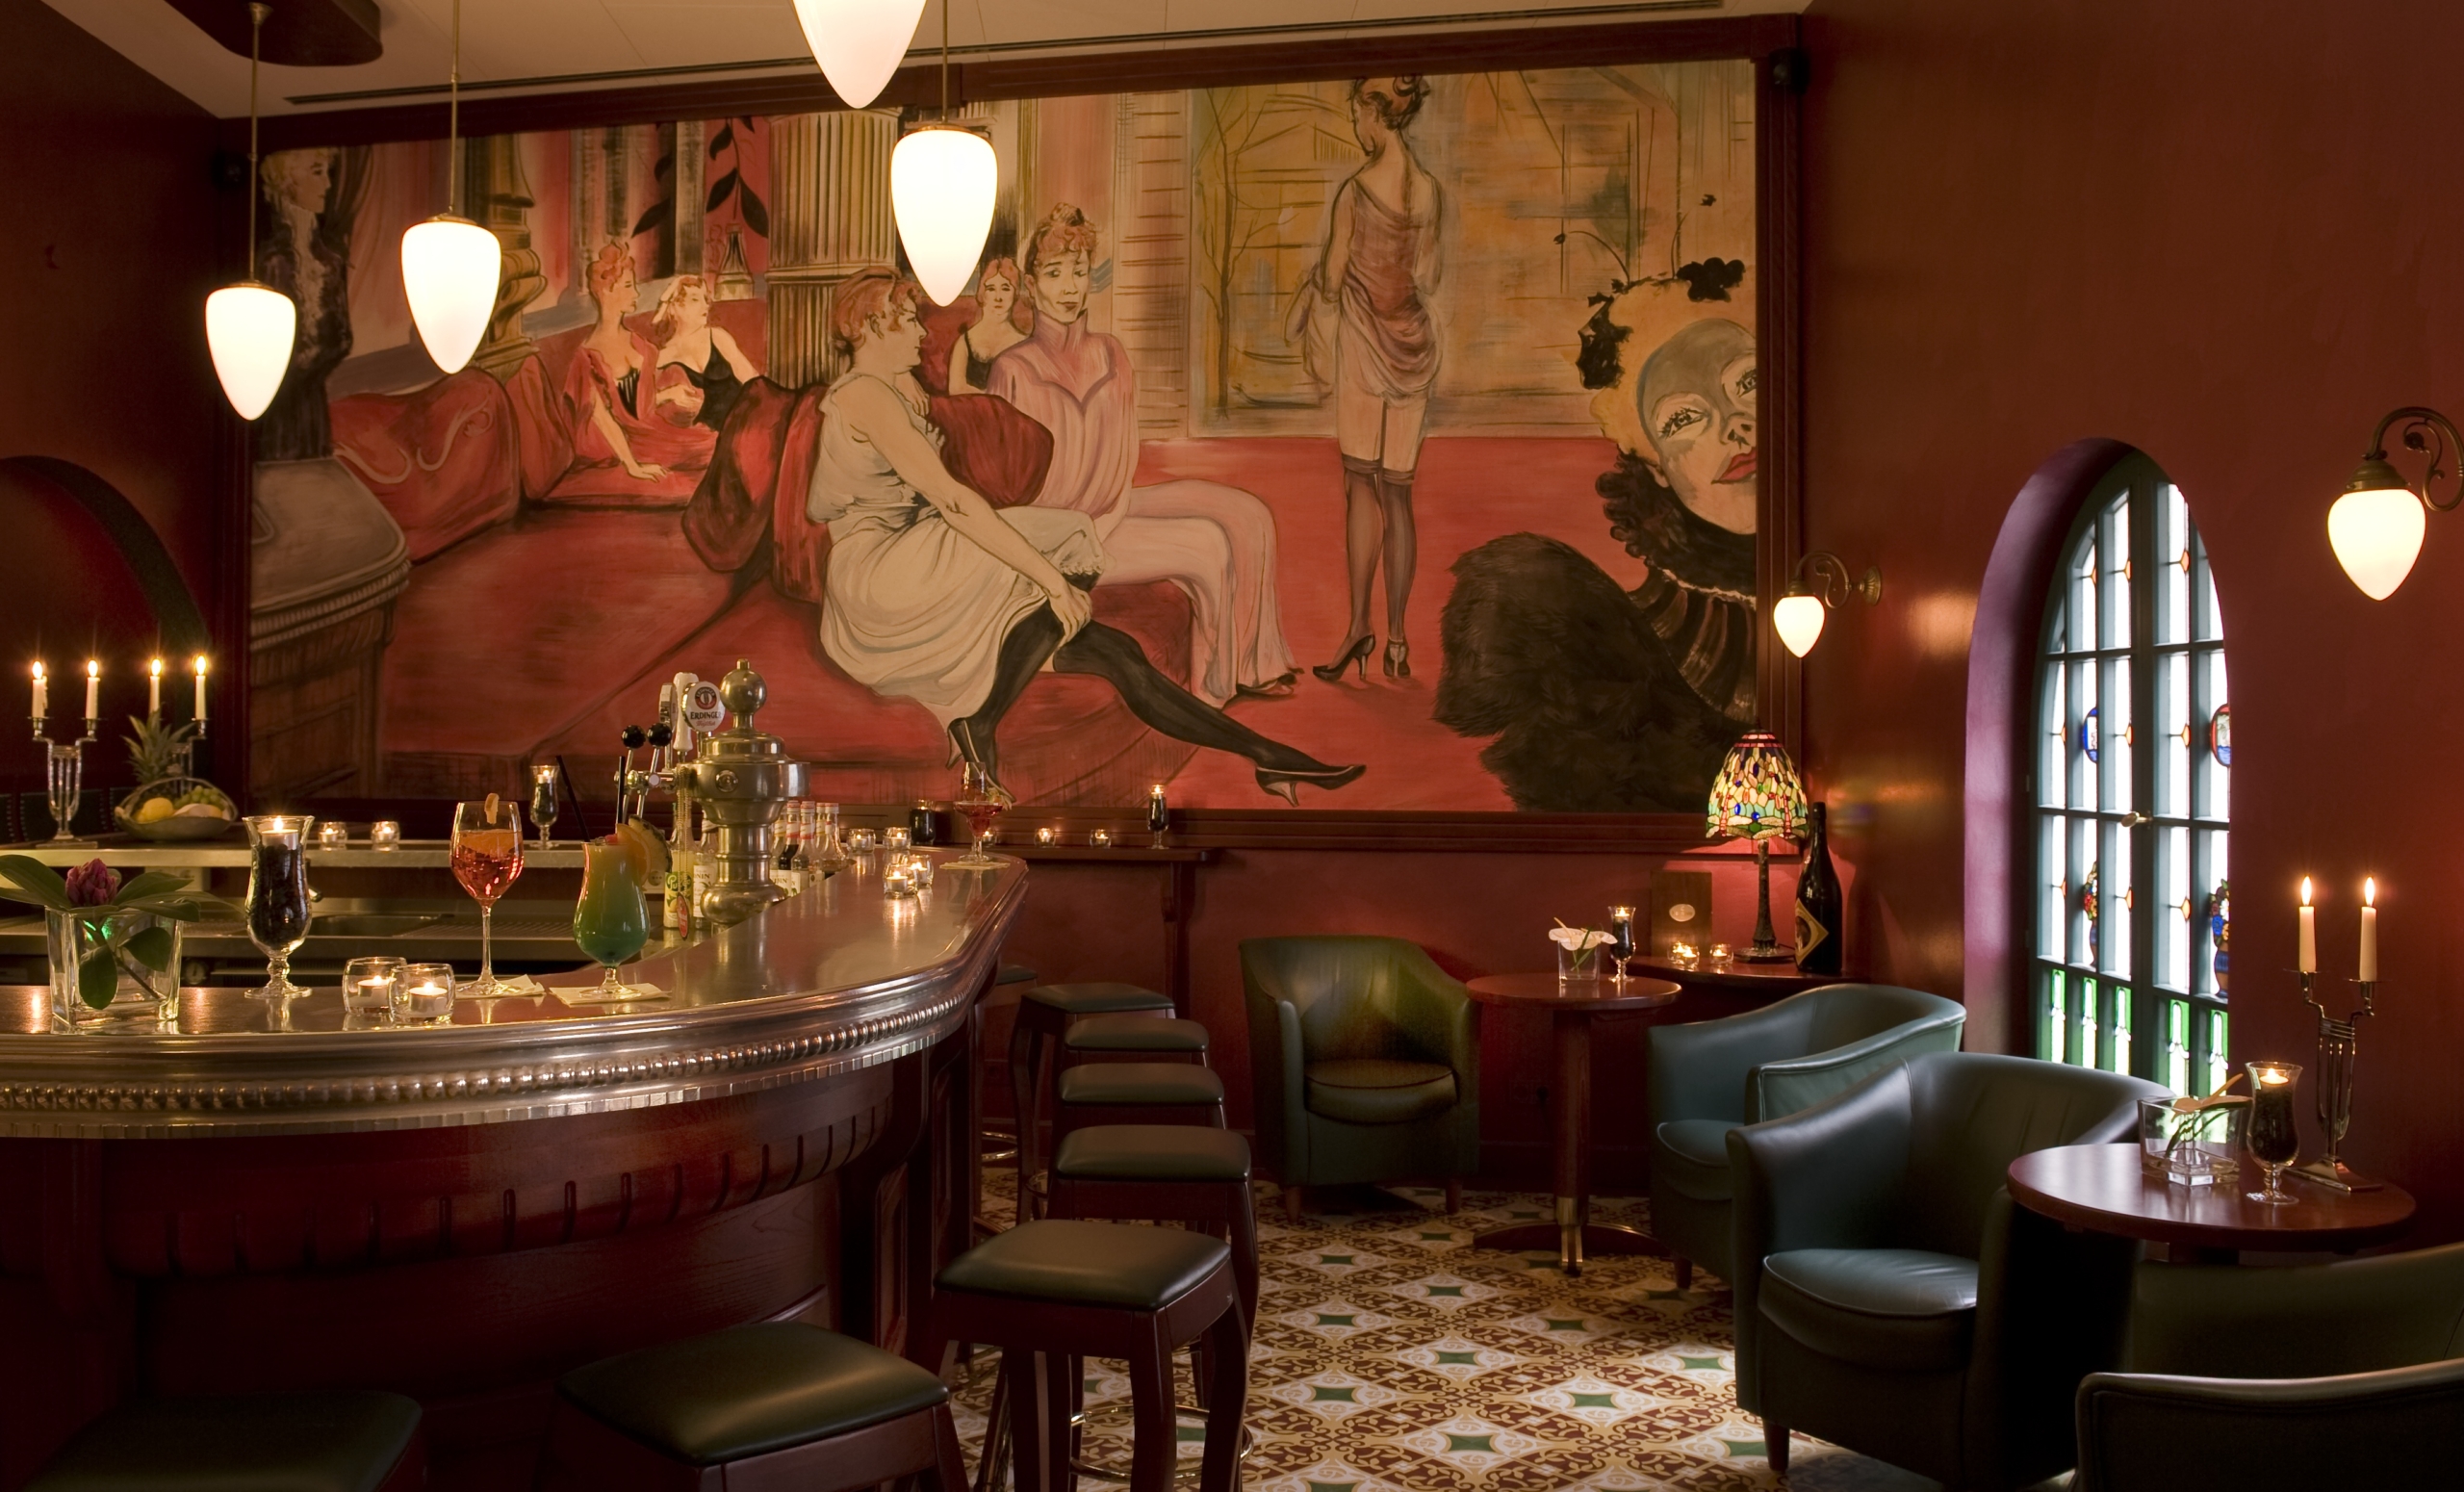 Hotelbar im Pariser Jugendstil - Innenarchitekt Paul Pouivet